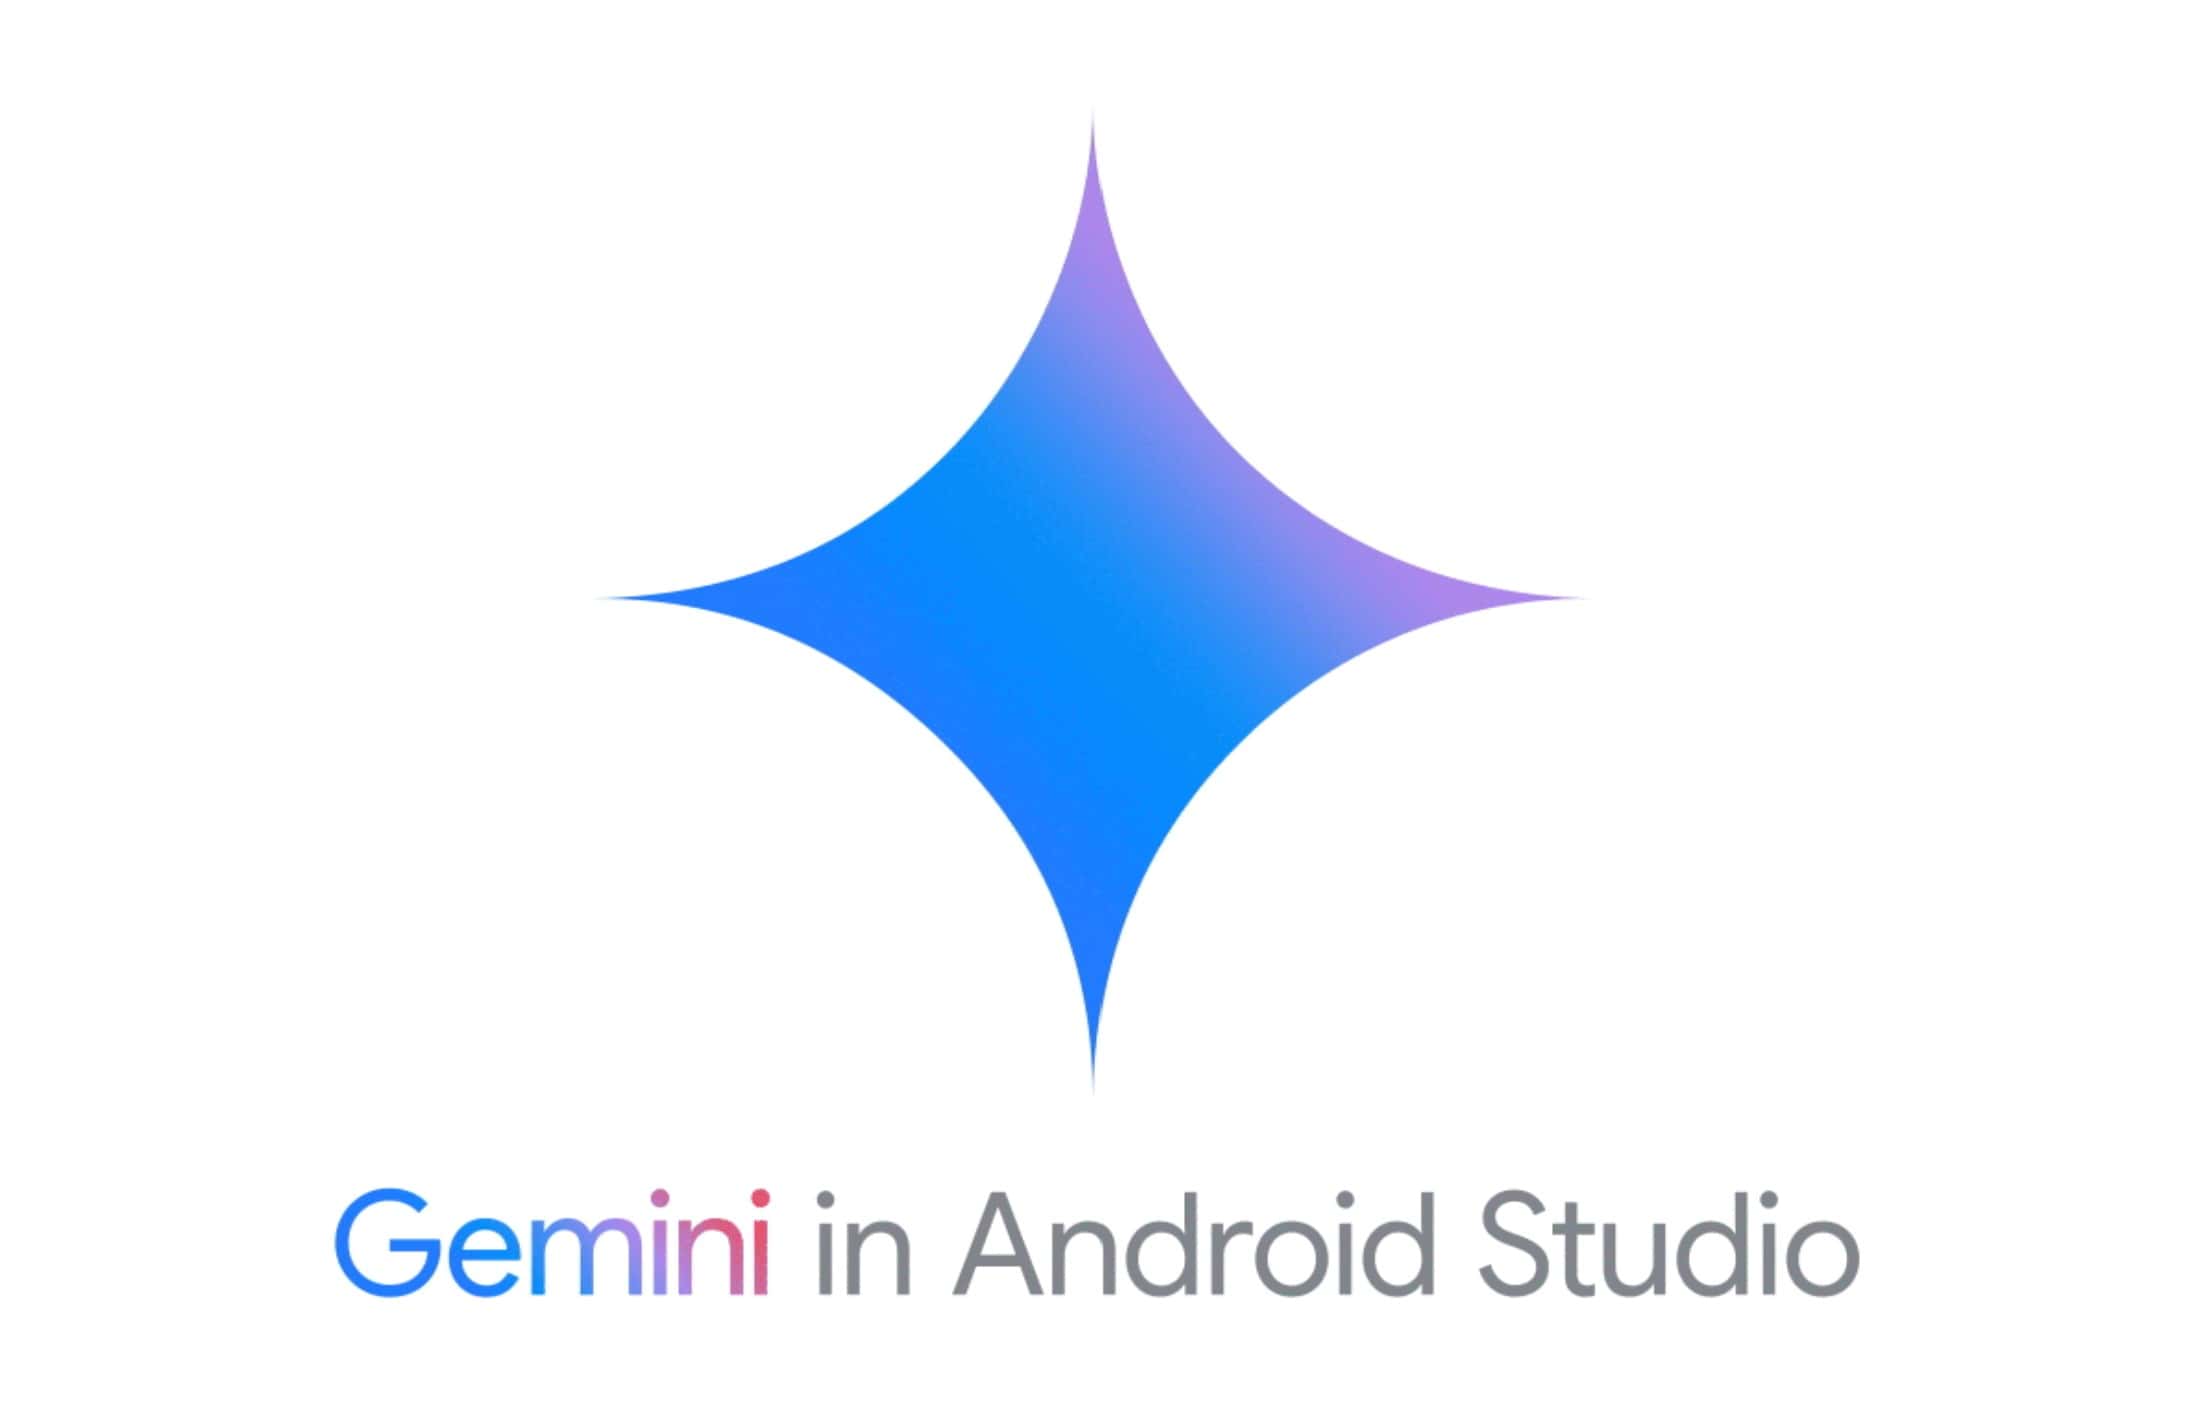 Gemini in Android Studio